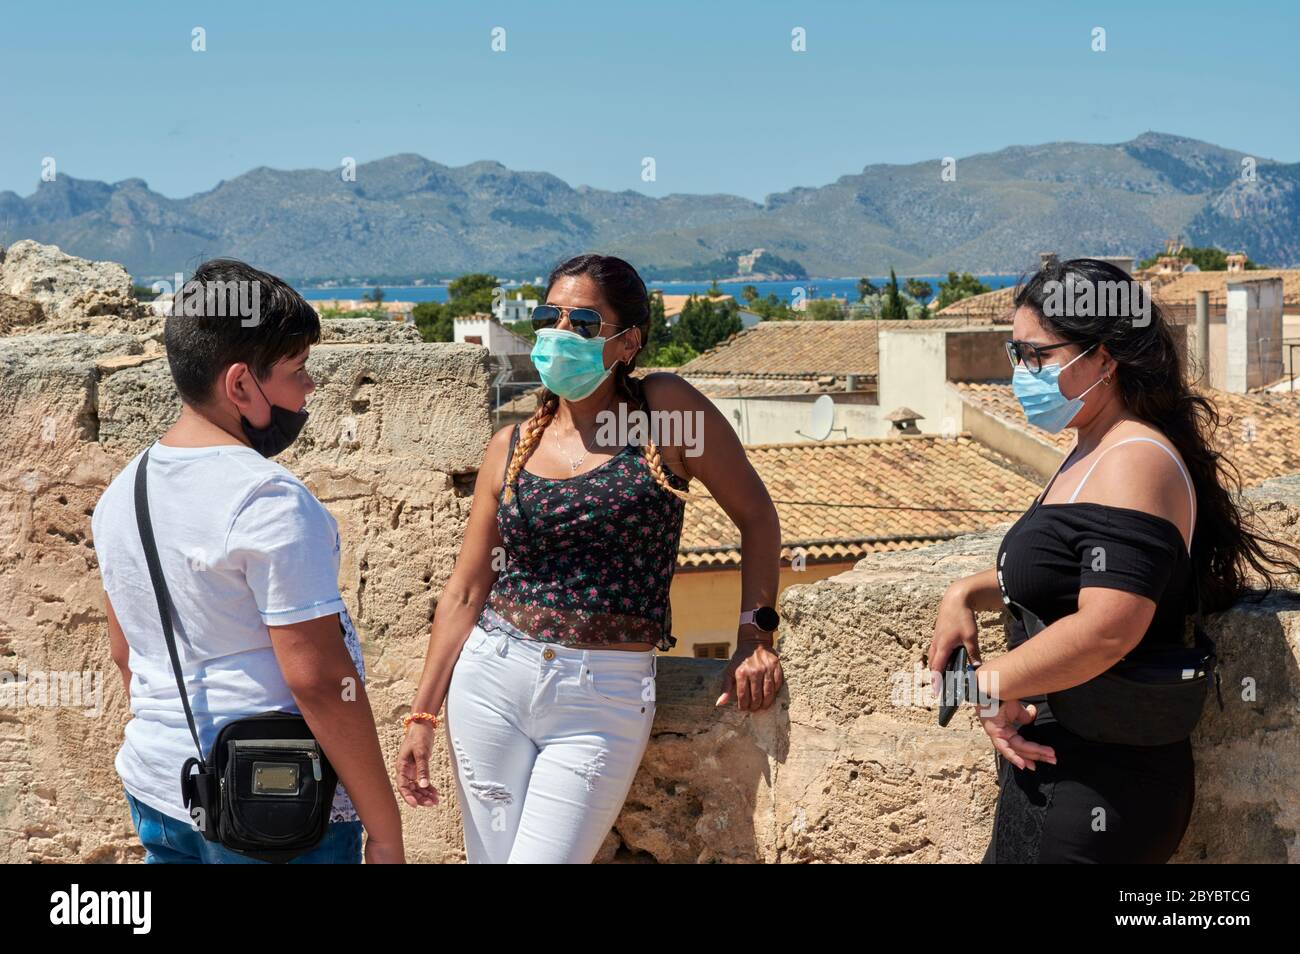 Familien-Touristenreise im Sommerurlaub, nach der COVID 19 Pandemie. Spanisch auf den Balearen. Europa Urlaub Lebensstil der jungen Menschen Stockfoto